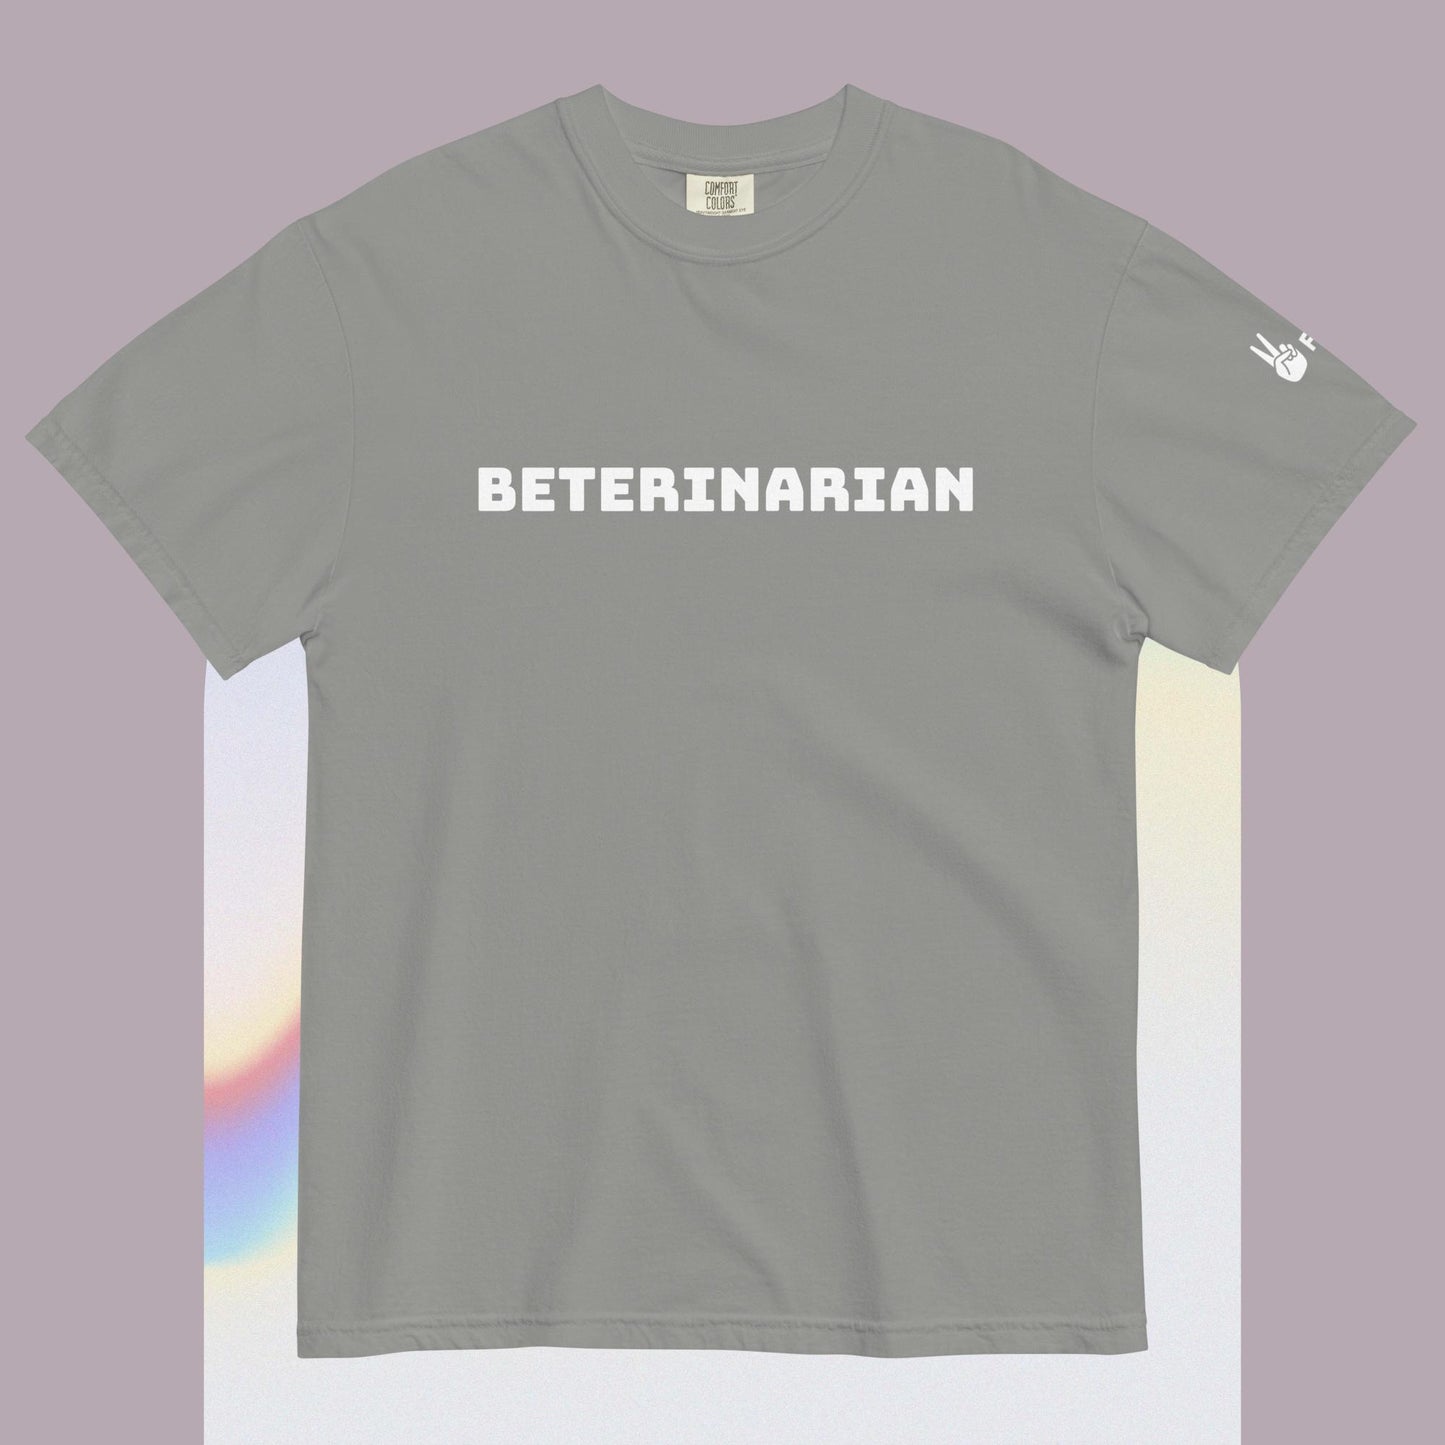 Bet-erinarian Shirt